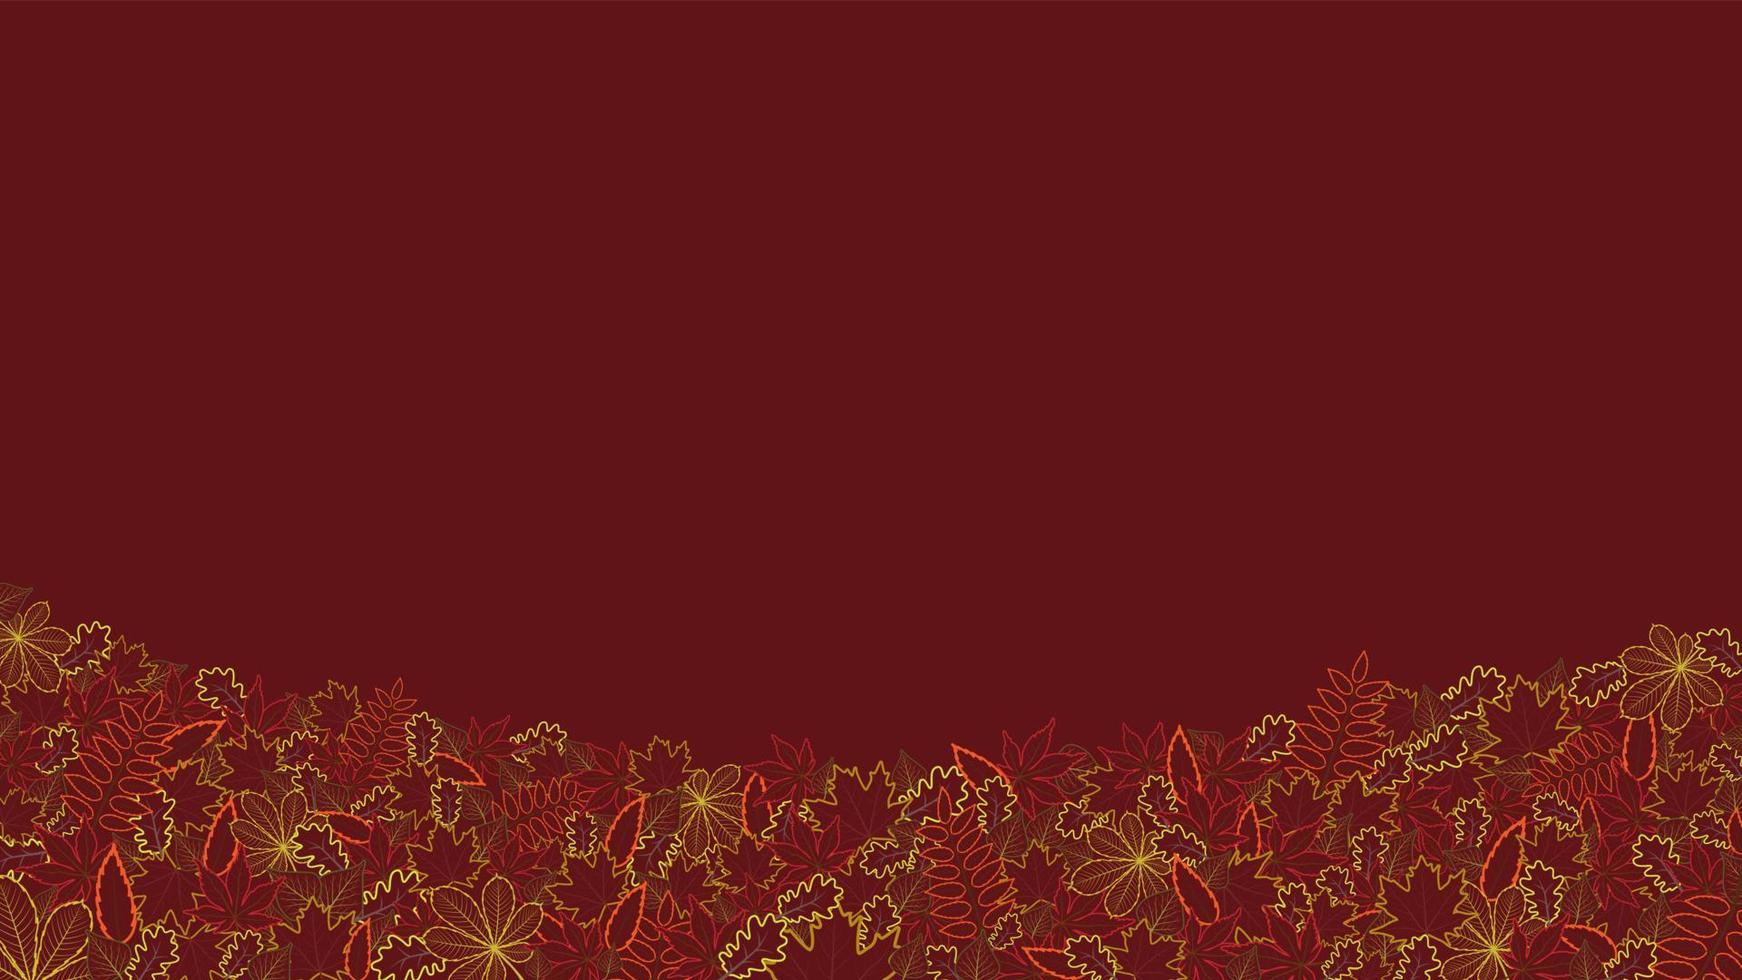 fondo de otoño con hojas de abedul de castaño de arce de roble de contorno. banner de otoño horizontal brillante con lugar para el texto. vector